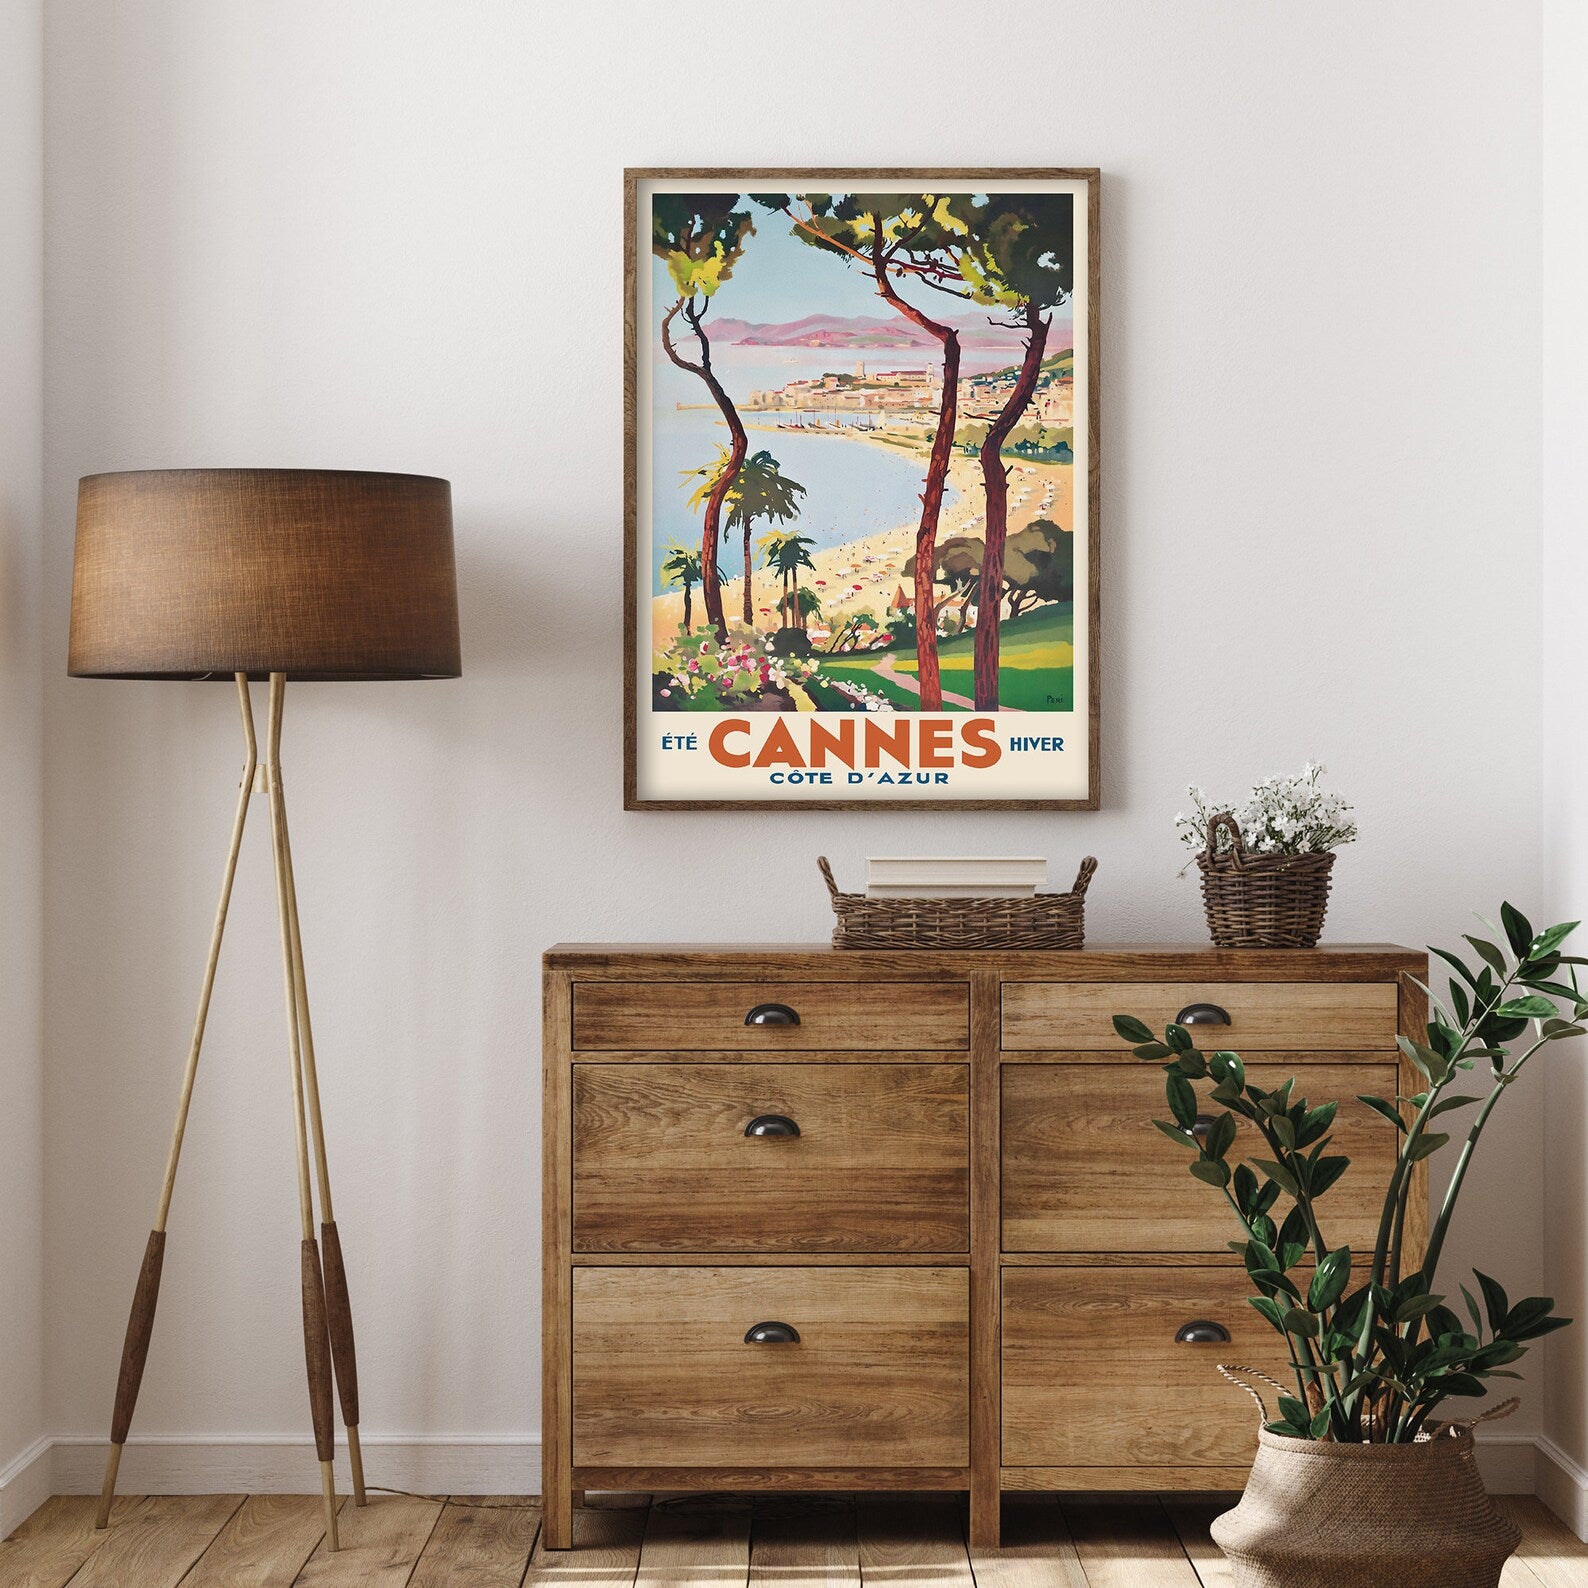 Cannes Cote d'Azur Poster